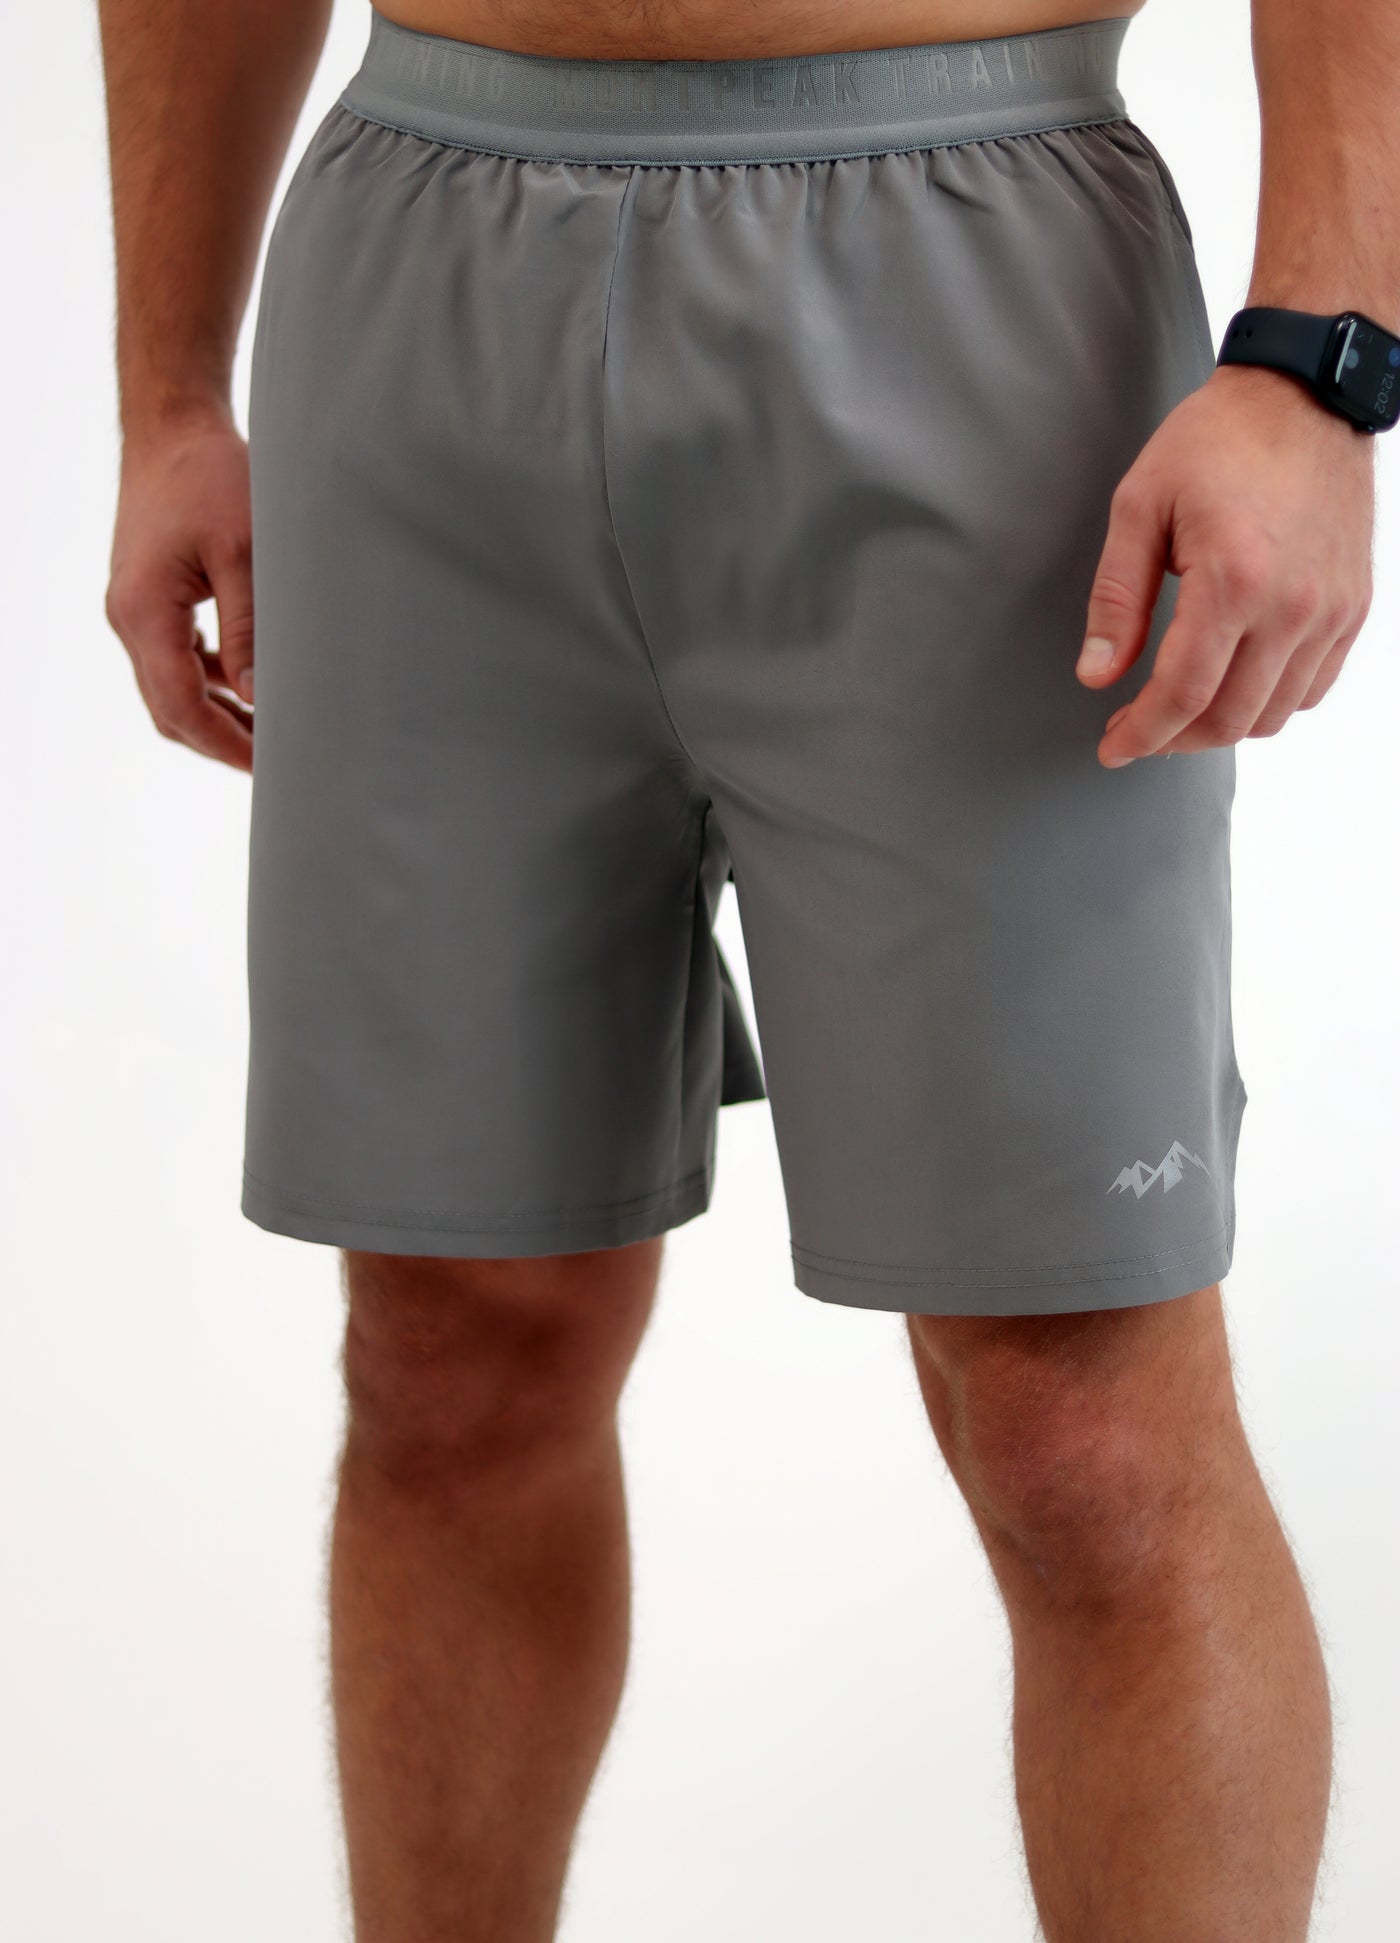 Granite Trail-Flex Pro Shorts